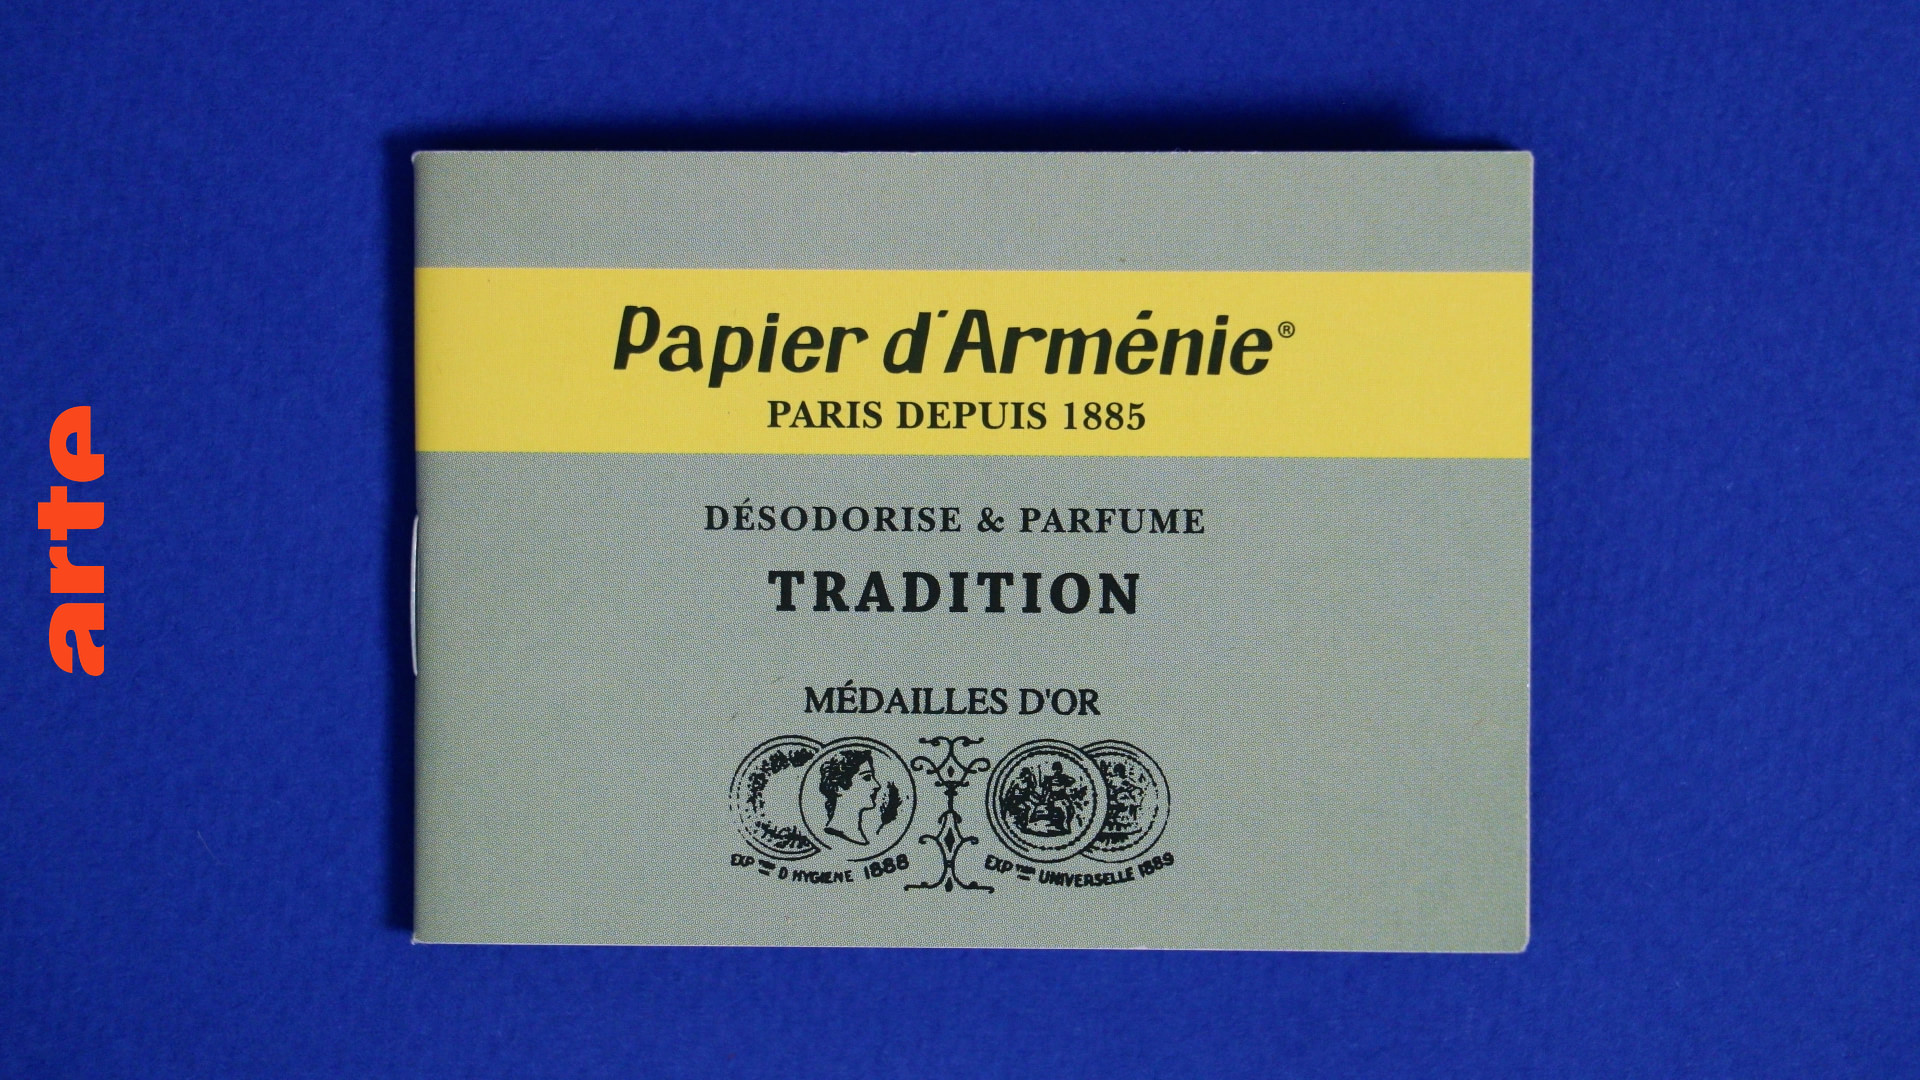 Le papier d'Arménie, un papier typiquement parisien - Vidéo